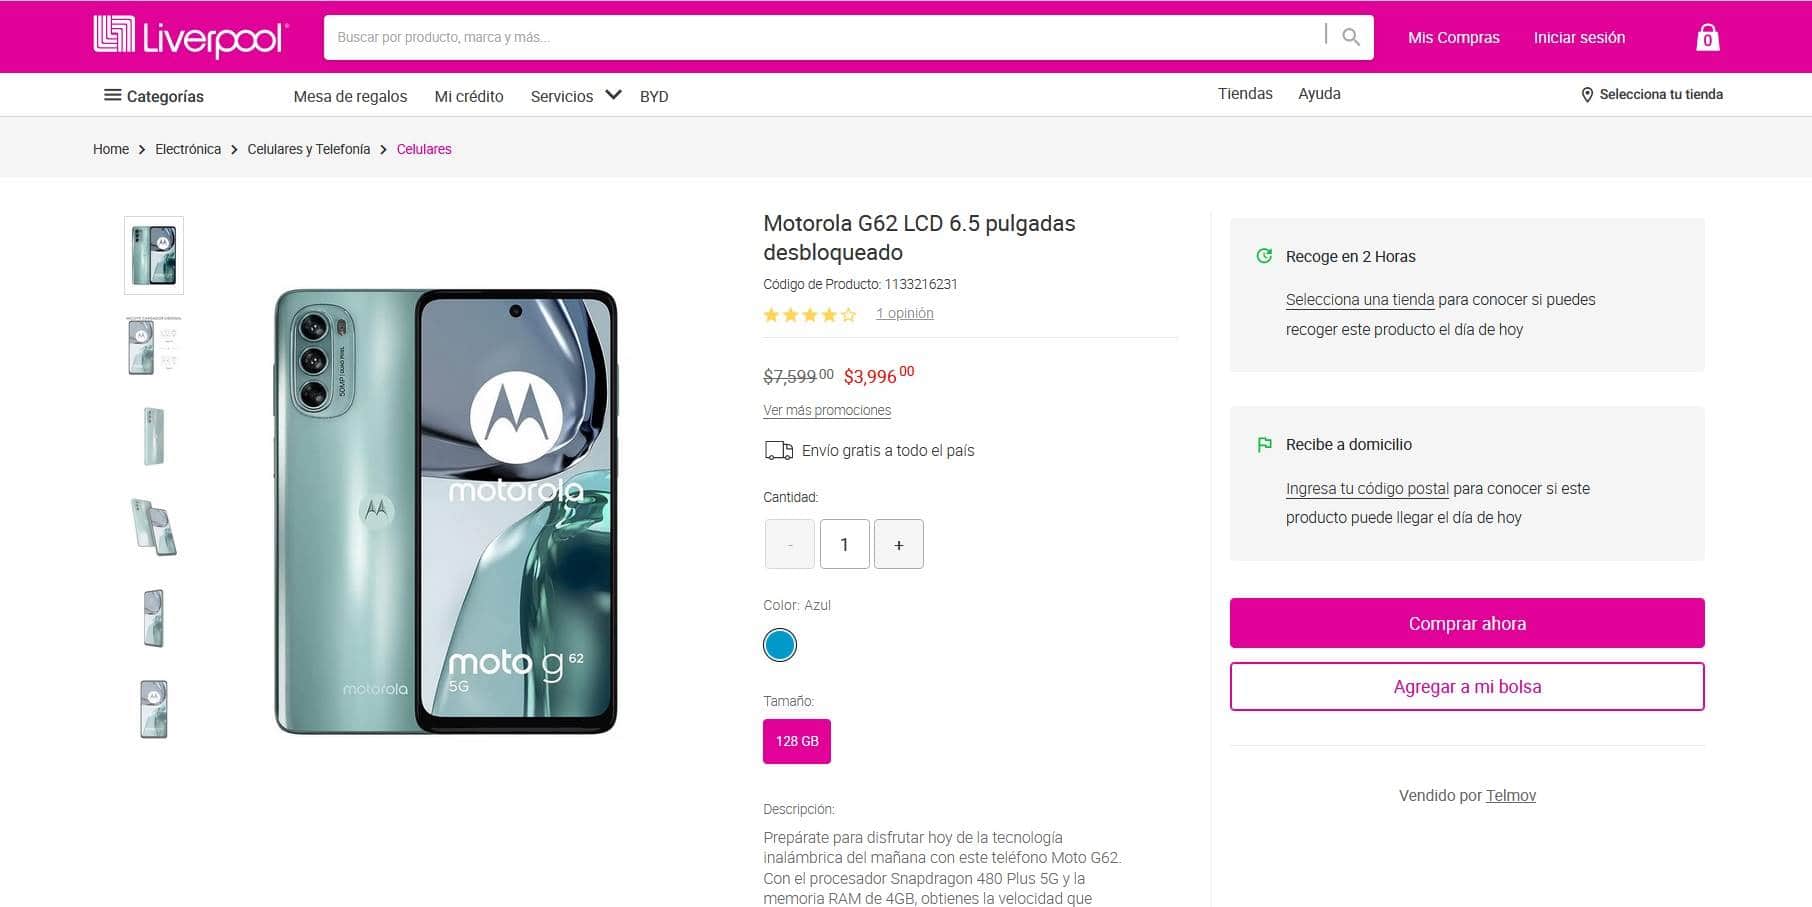 Smartphone Motorola Moto G62 en rebaja en Liverpool